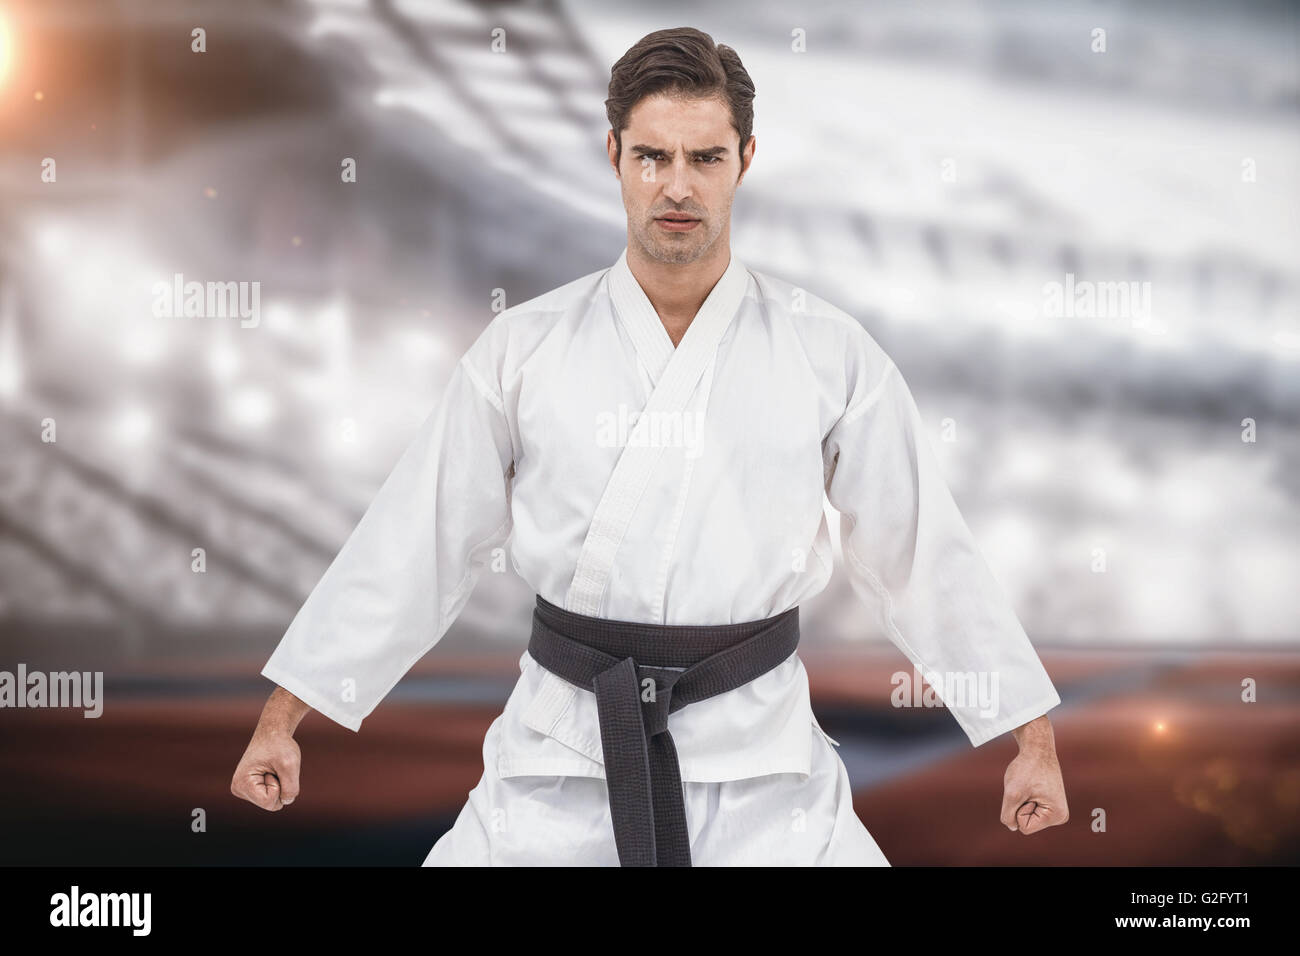 Imagen compuesta de retrato de graves jugador karate Foto de stock